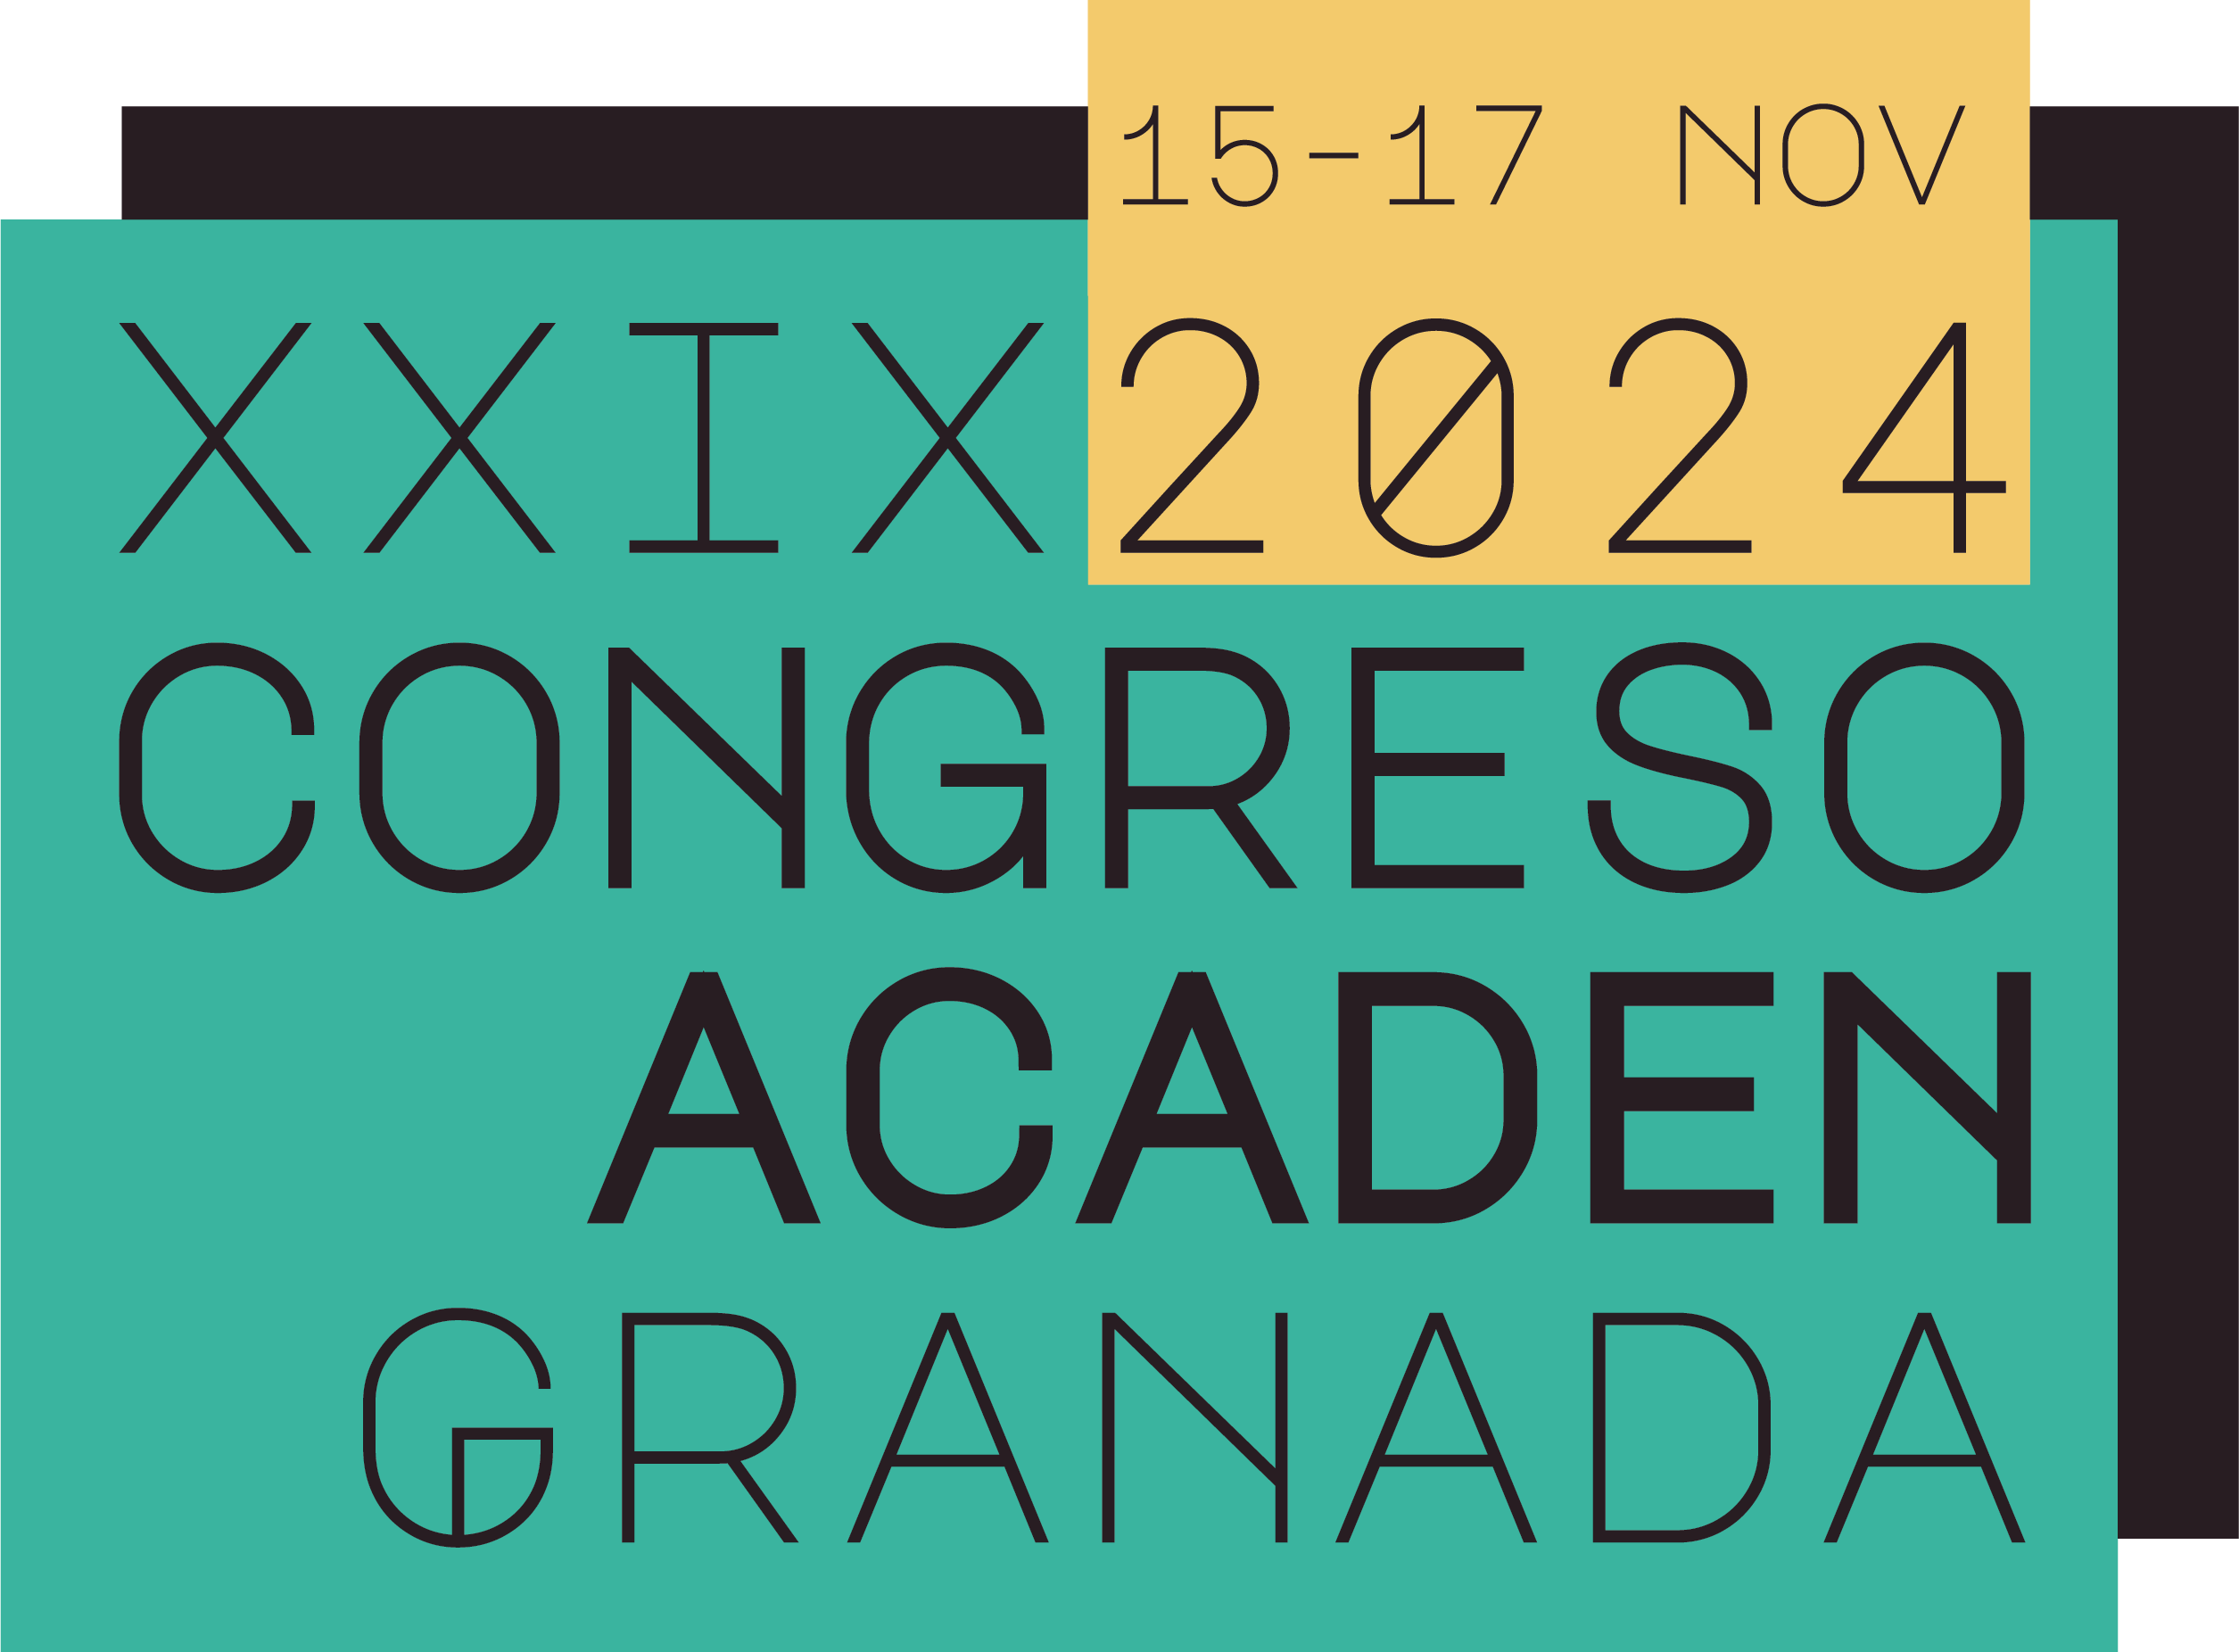 Congreso Acaden Granada 2024 - 15, 16 y 17 de Noviembre